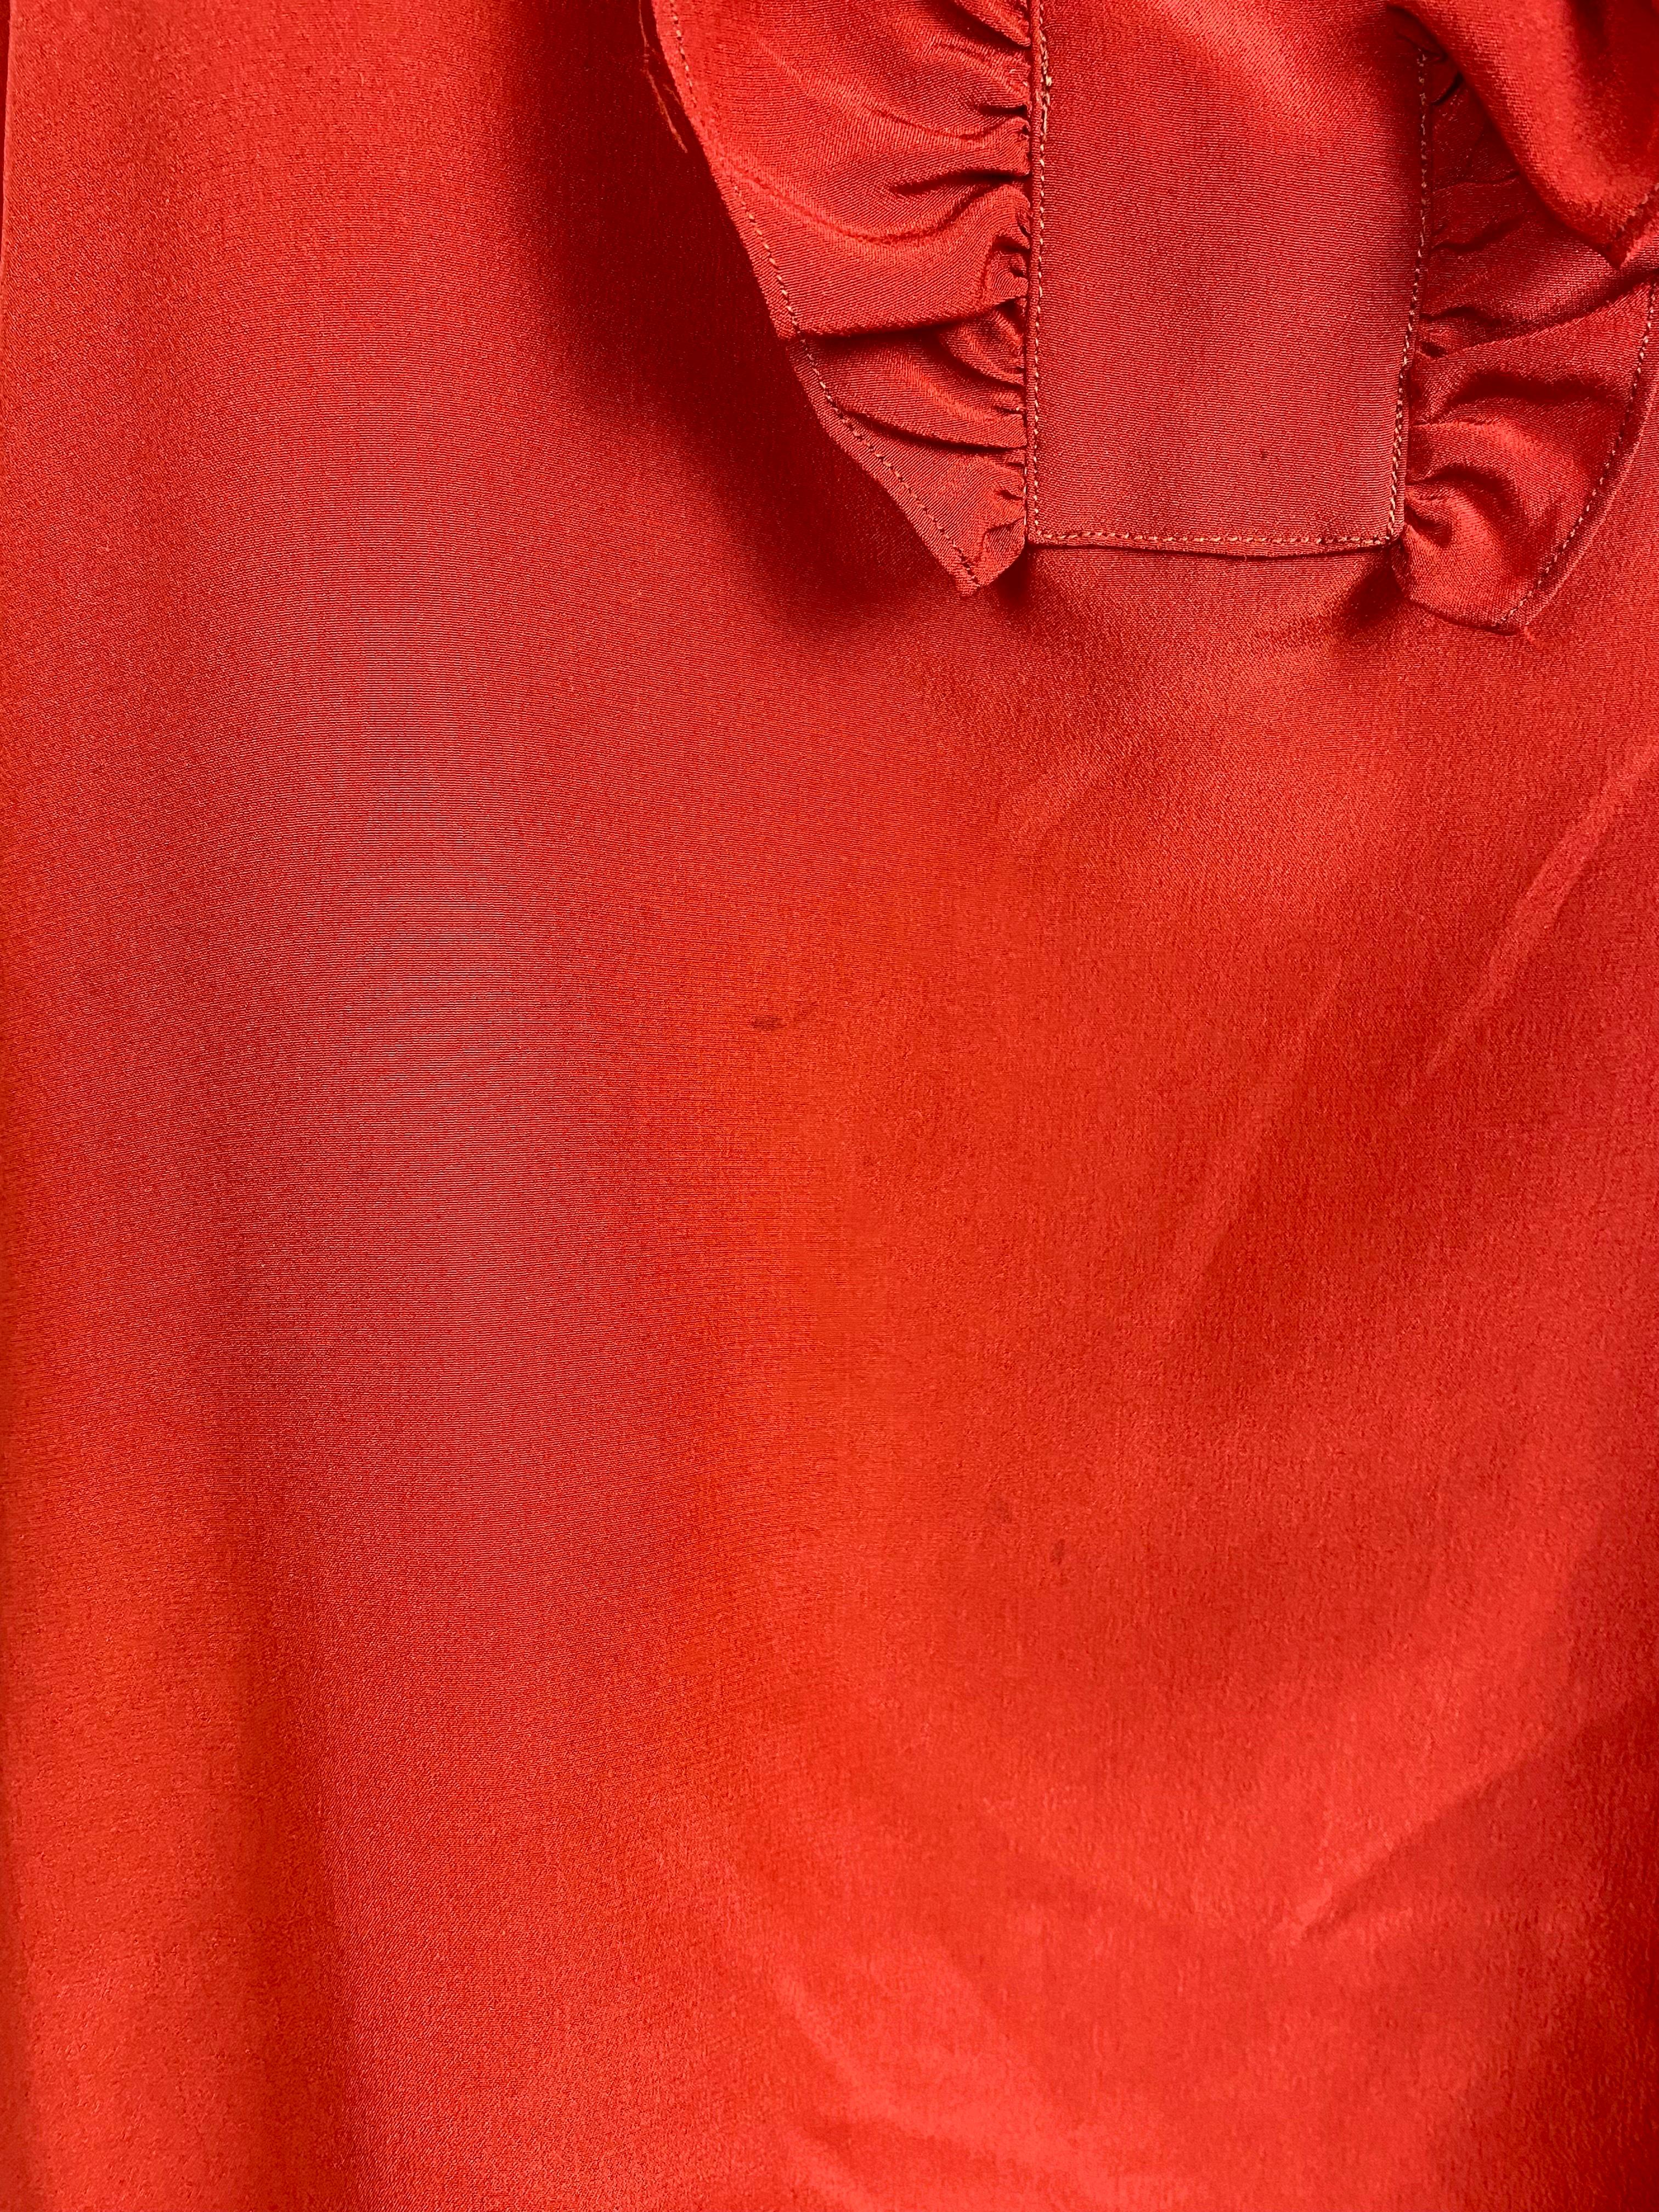 Yves Saint Laurent chemisier vintage Rive Gauche, années 1970 Rouge cardinal. en vente 8